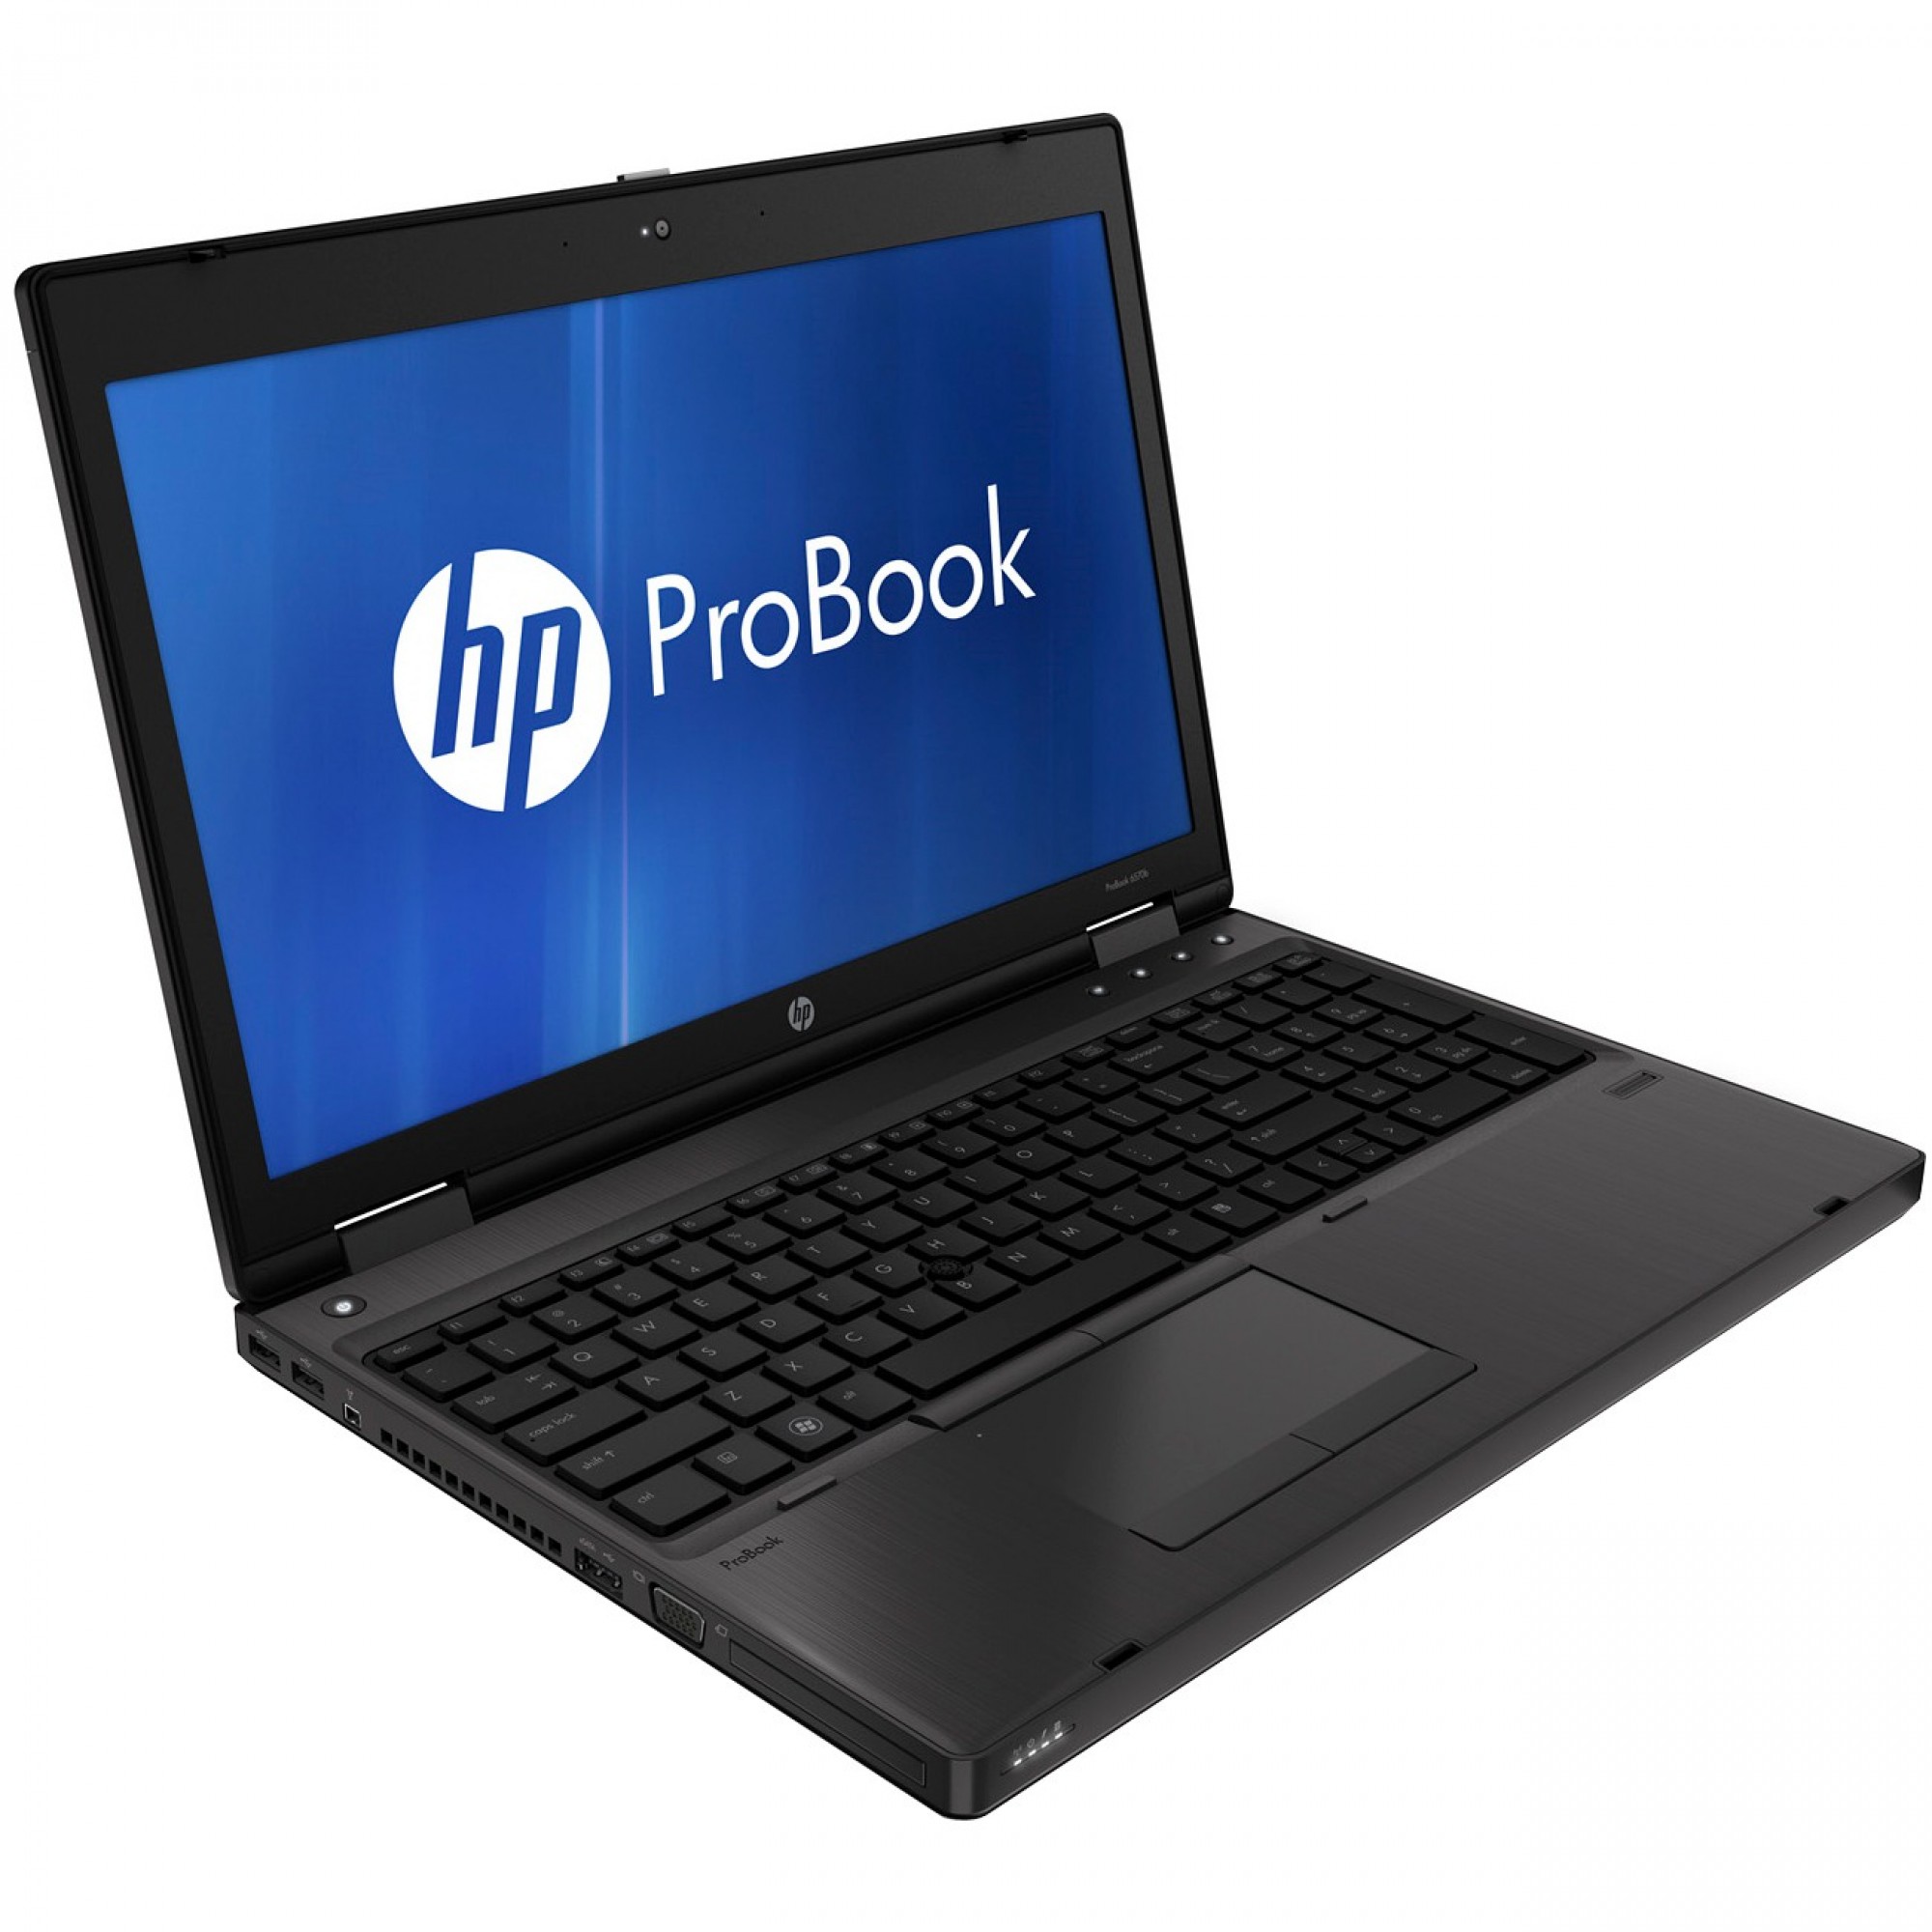 ドライブありHP ProBook 6570bCore i5 4GB 新品SSD480GB DVD-ROM 無線LAN Windows10 64bitWPSOffice 15.6インチ  パソコン  ノートパソコン